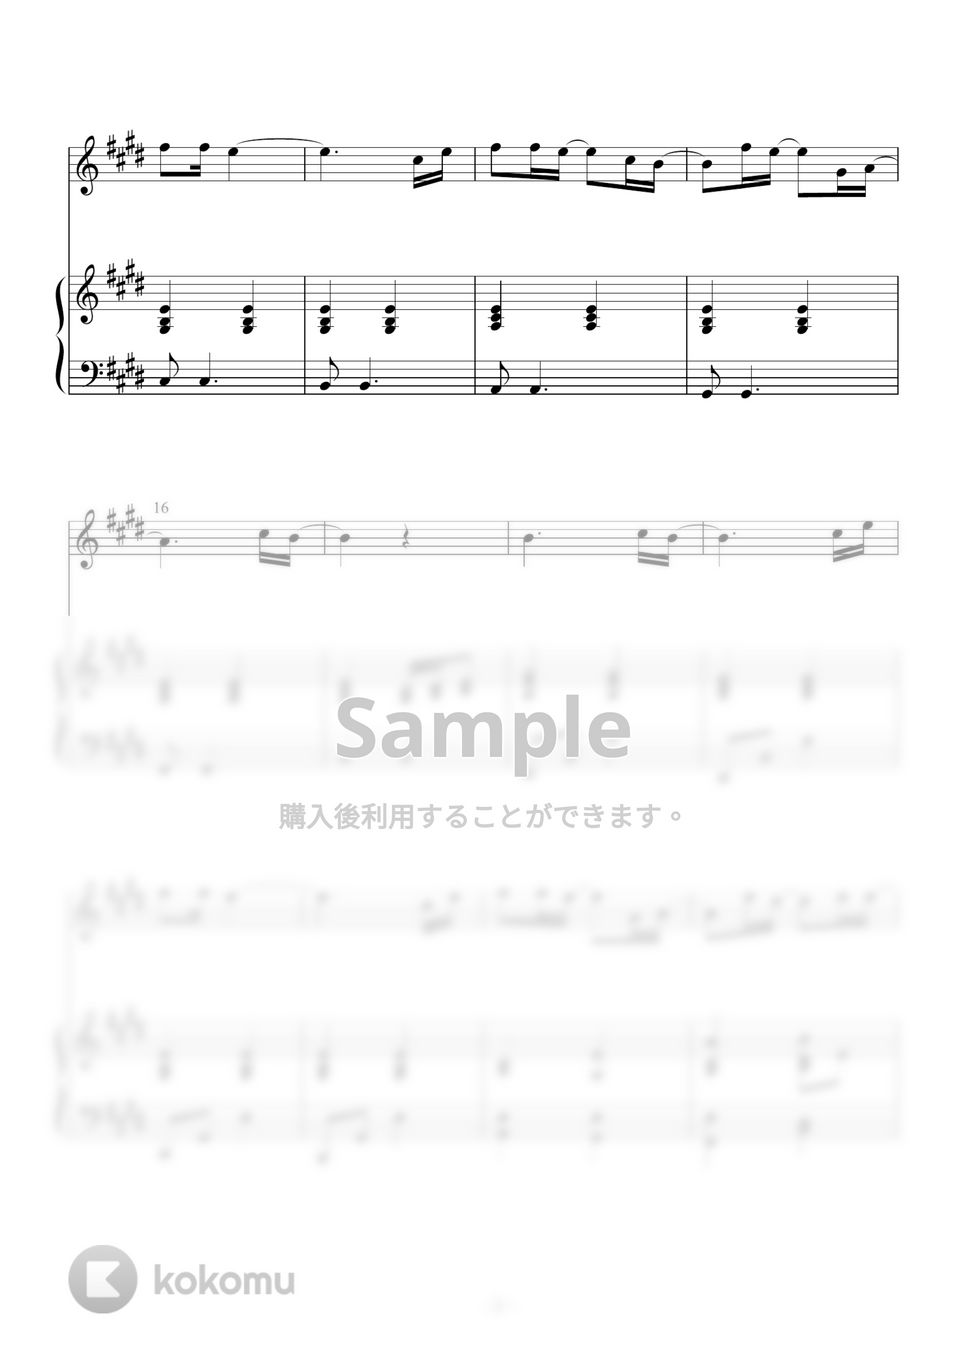 一青窈 - ハナミズキ (ピアノ伴奏楽譜、ボーカル楽譜付) by Azure Piano